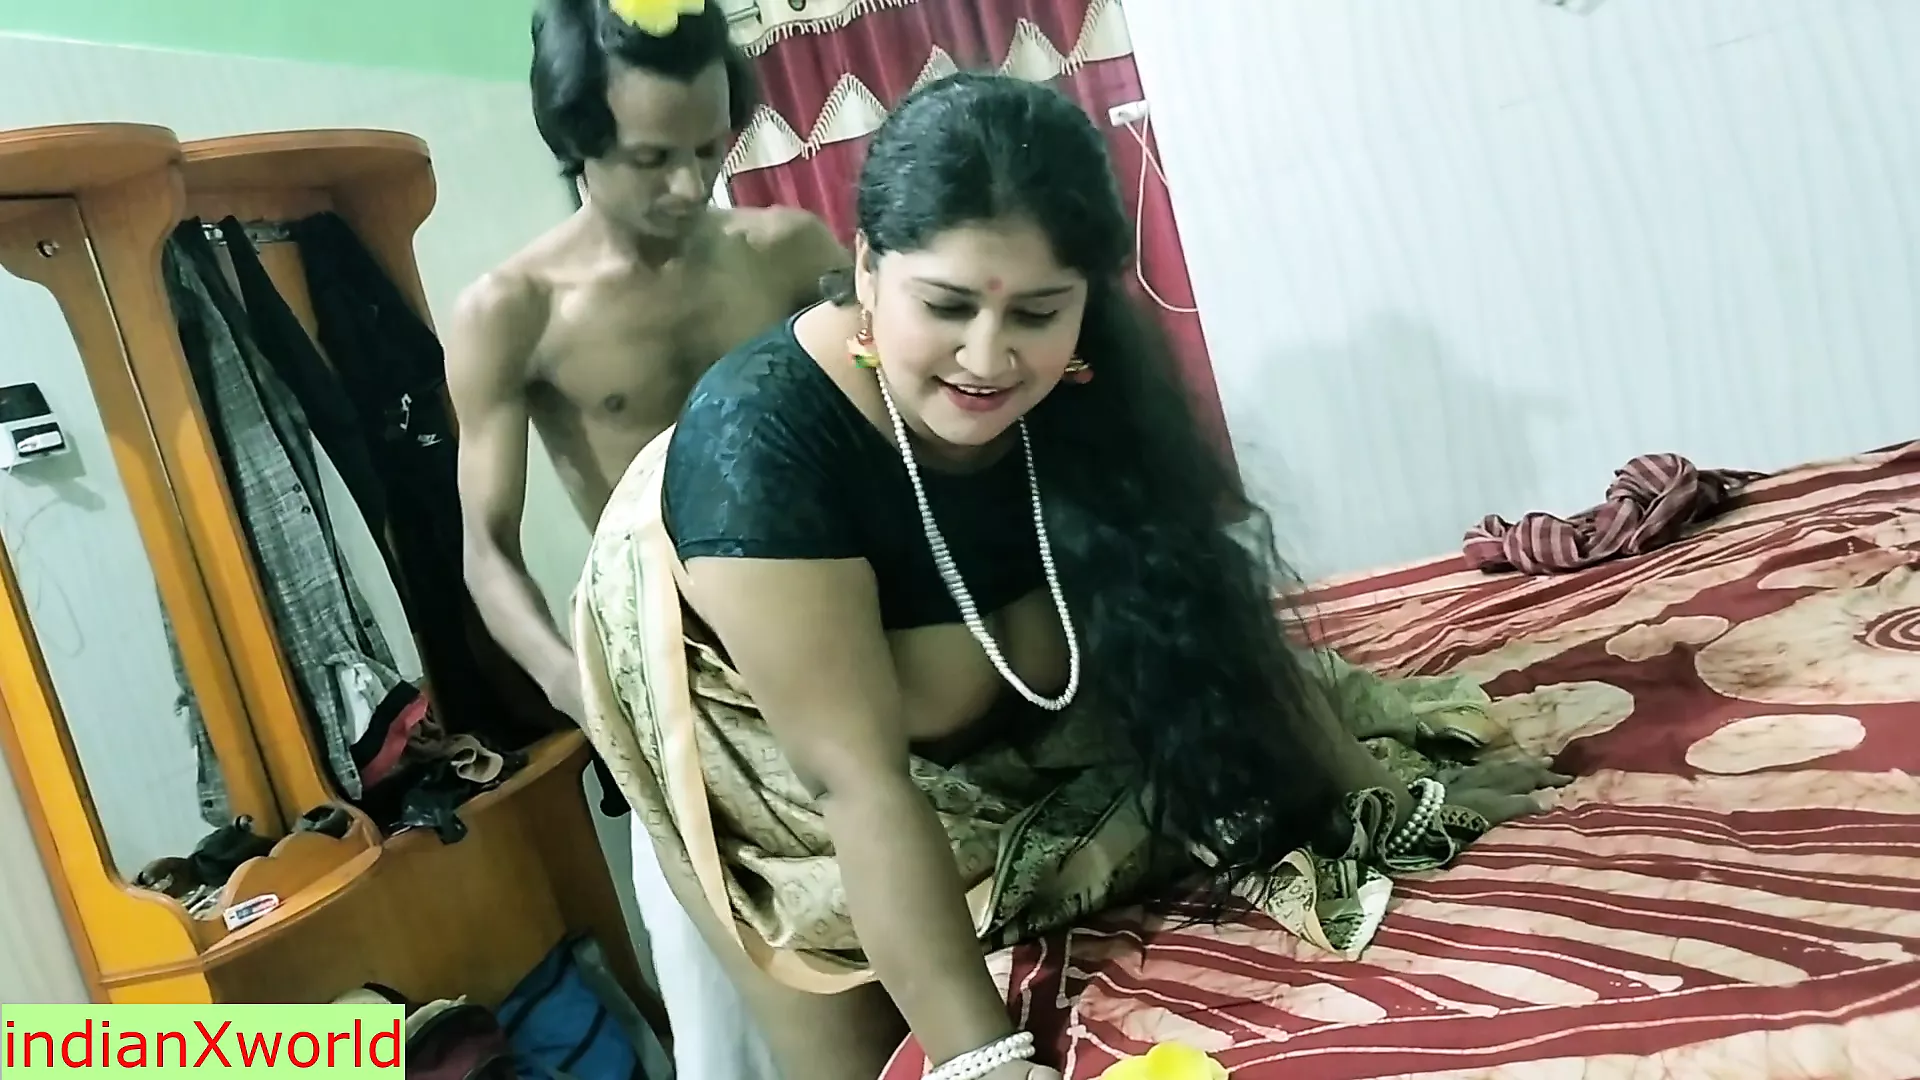 Mooie grote borsten bhabhi geweldige xxx hardcore seks !! hete vrouw seks xHamster